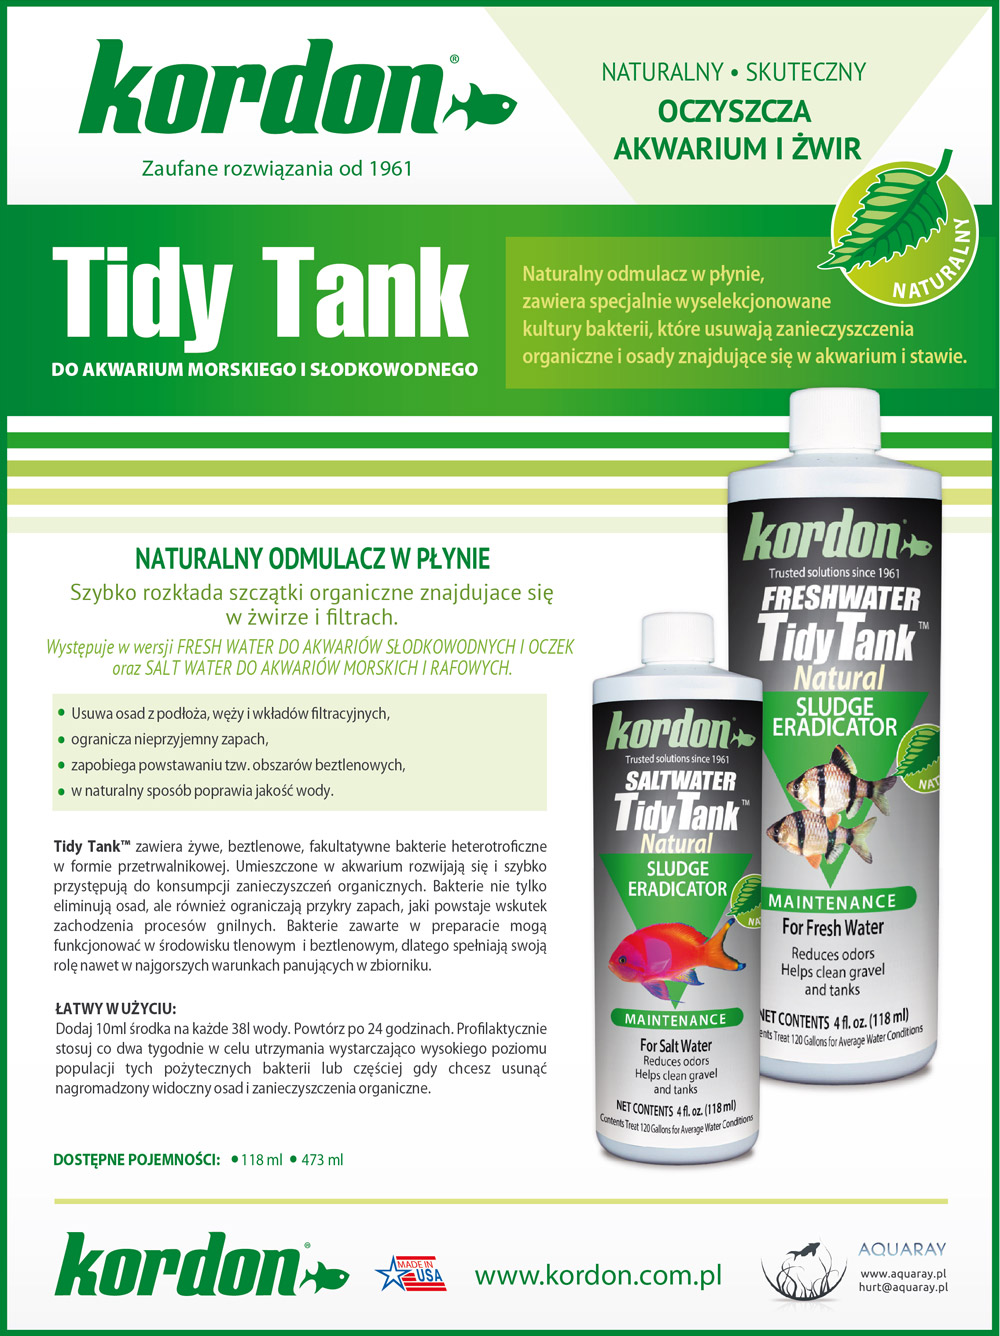 KORDON Tidy Tank Freshwater (39664) - Odmulacz w płynie do akwarium słodkowodnego i oczka wodnego